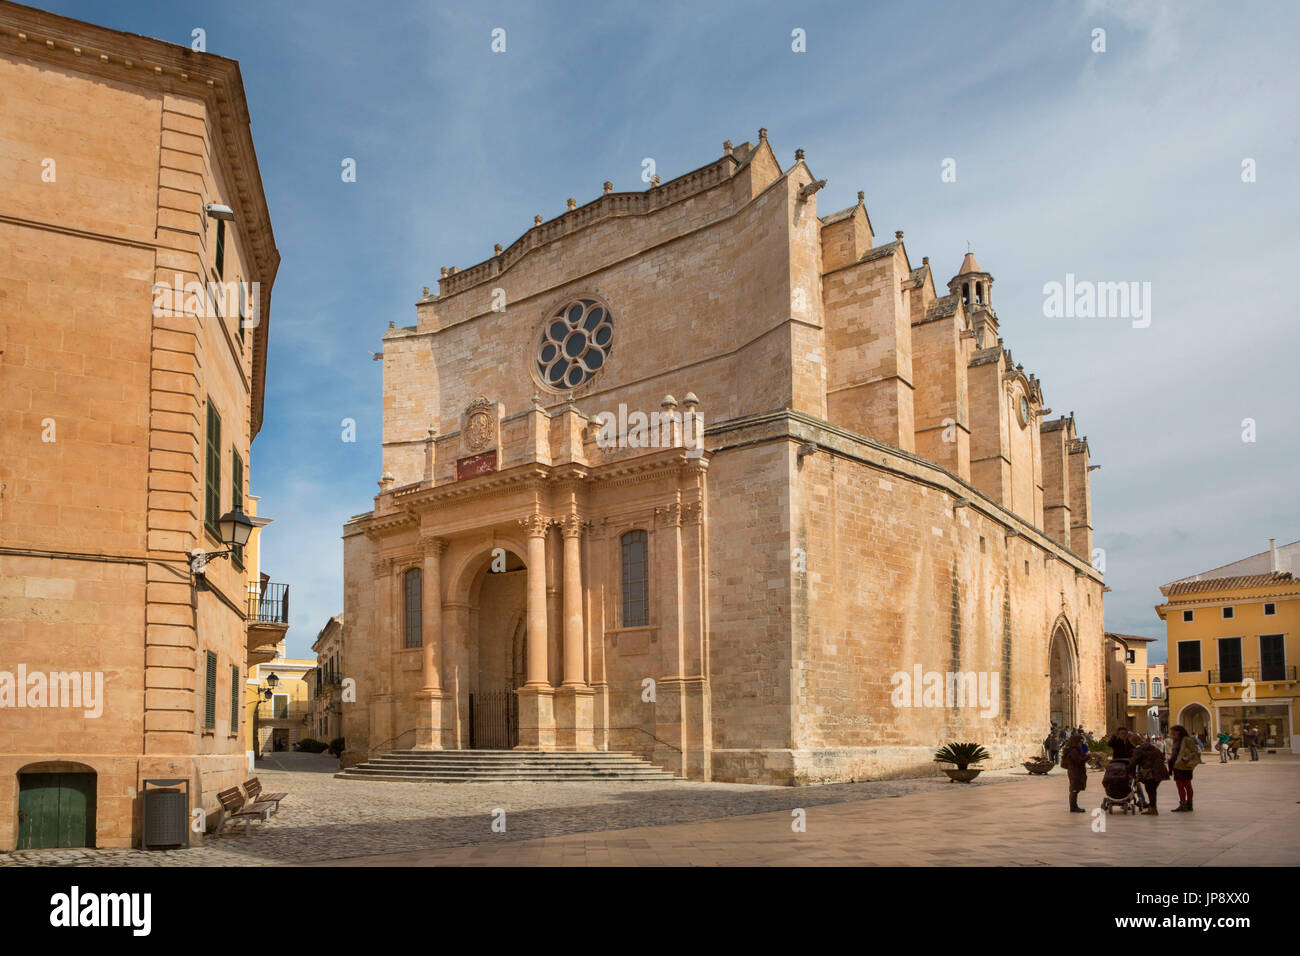 Espagne Baléares, Mallorca Island, la ville de Ciutadella, cathédrale de Ciutadella Banque D'Images